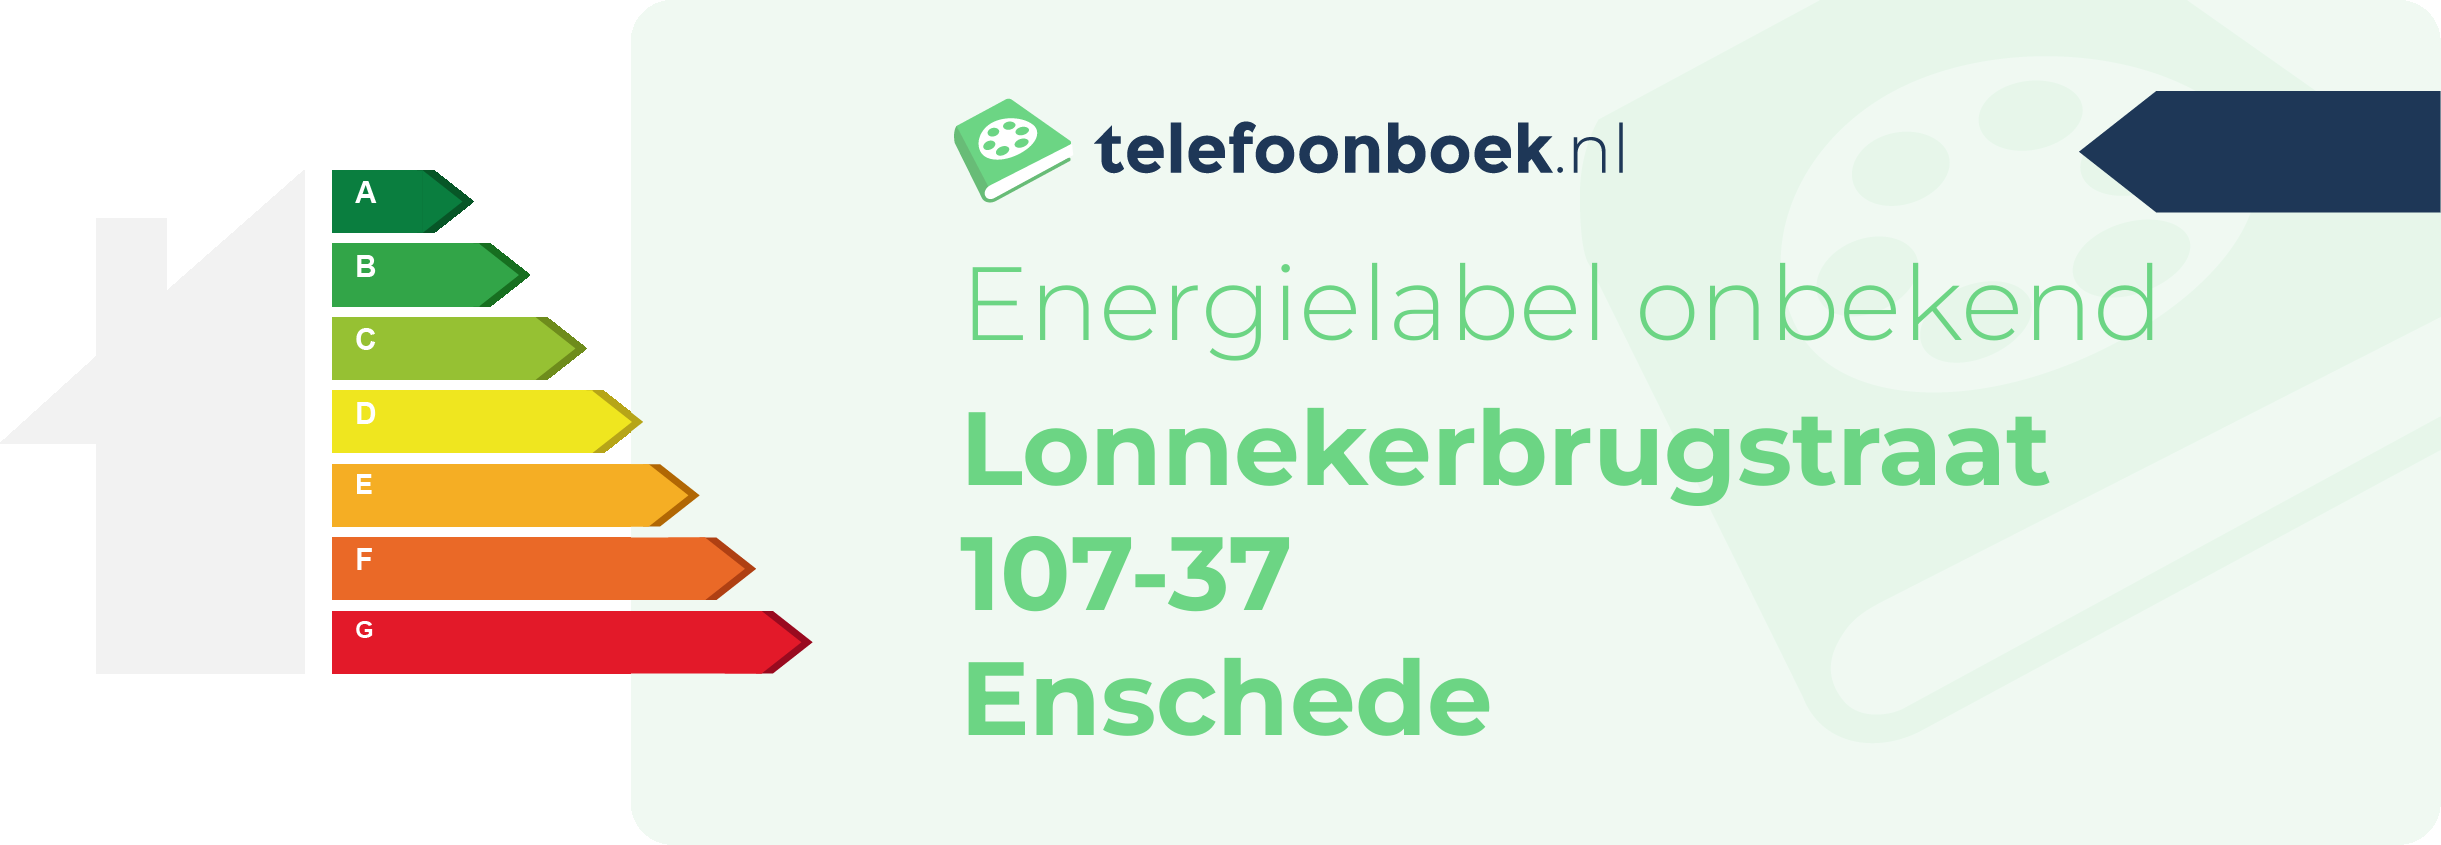 Energielabel Lonnekerbrugstraat 107-37 Enschede